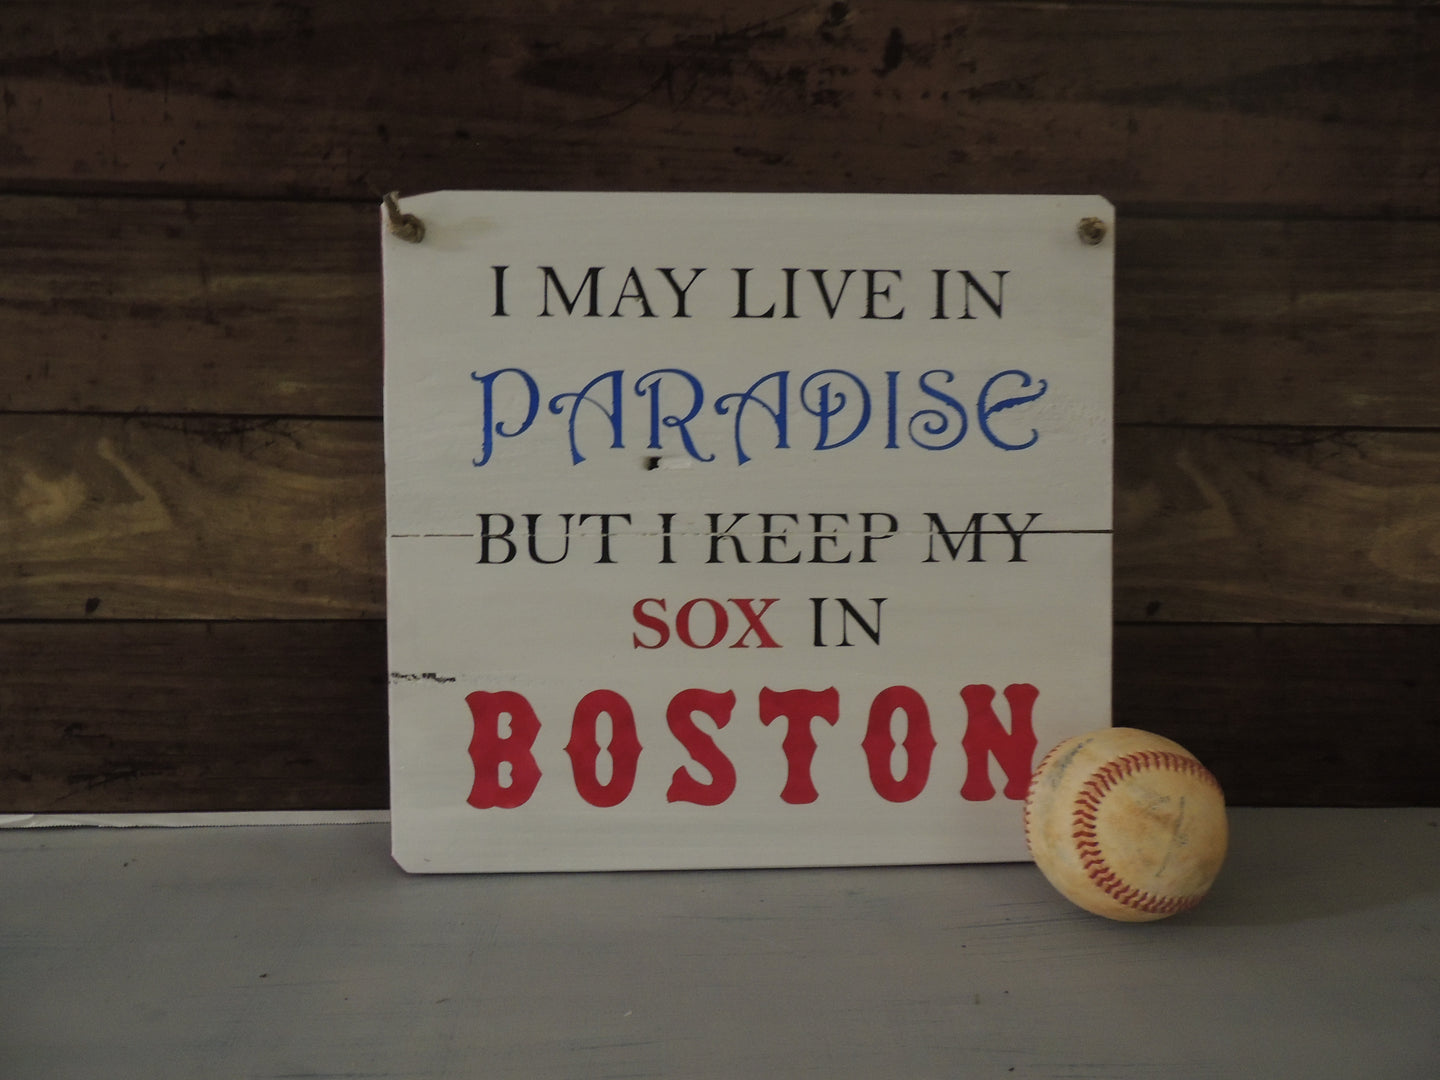 Sox in Boston